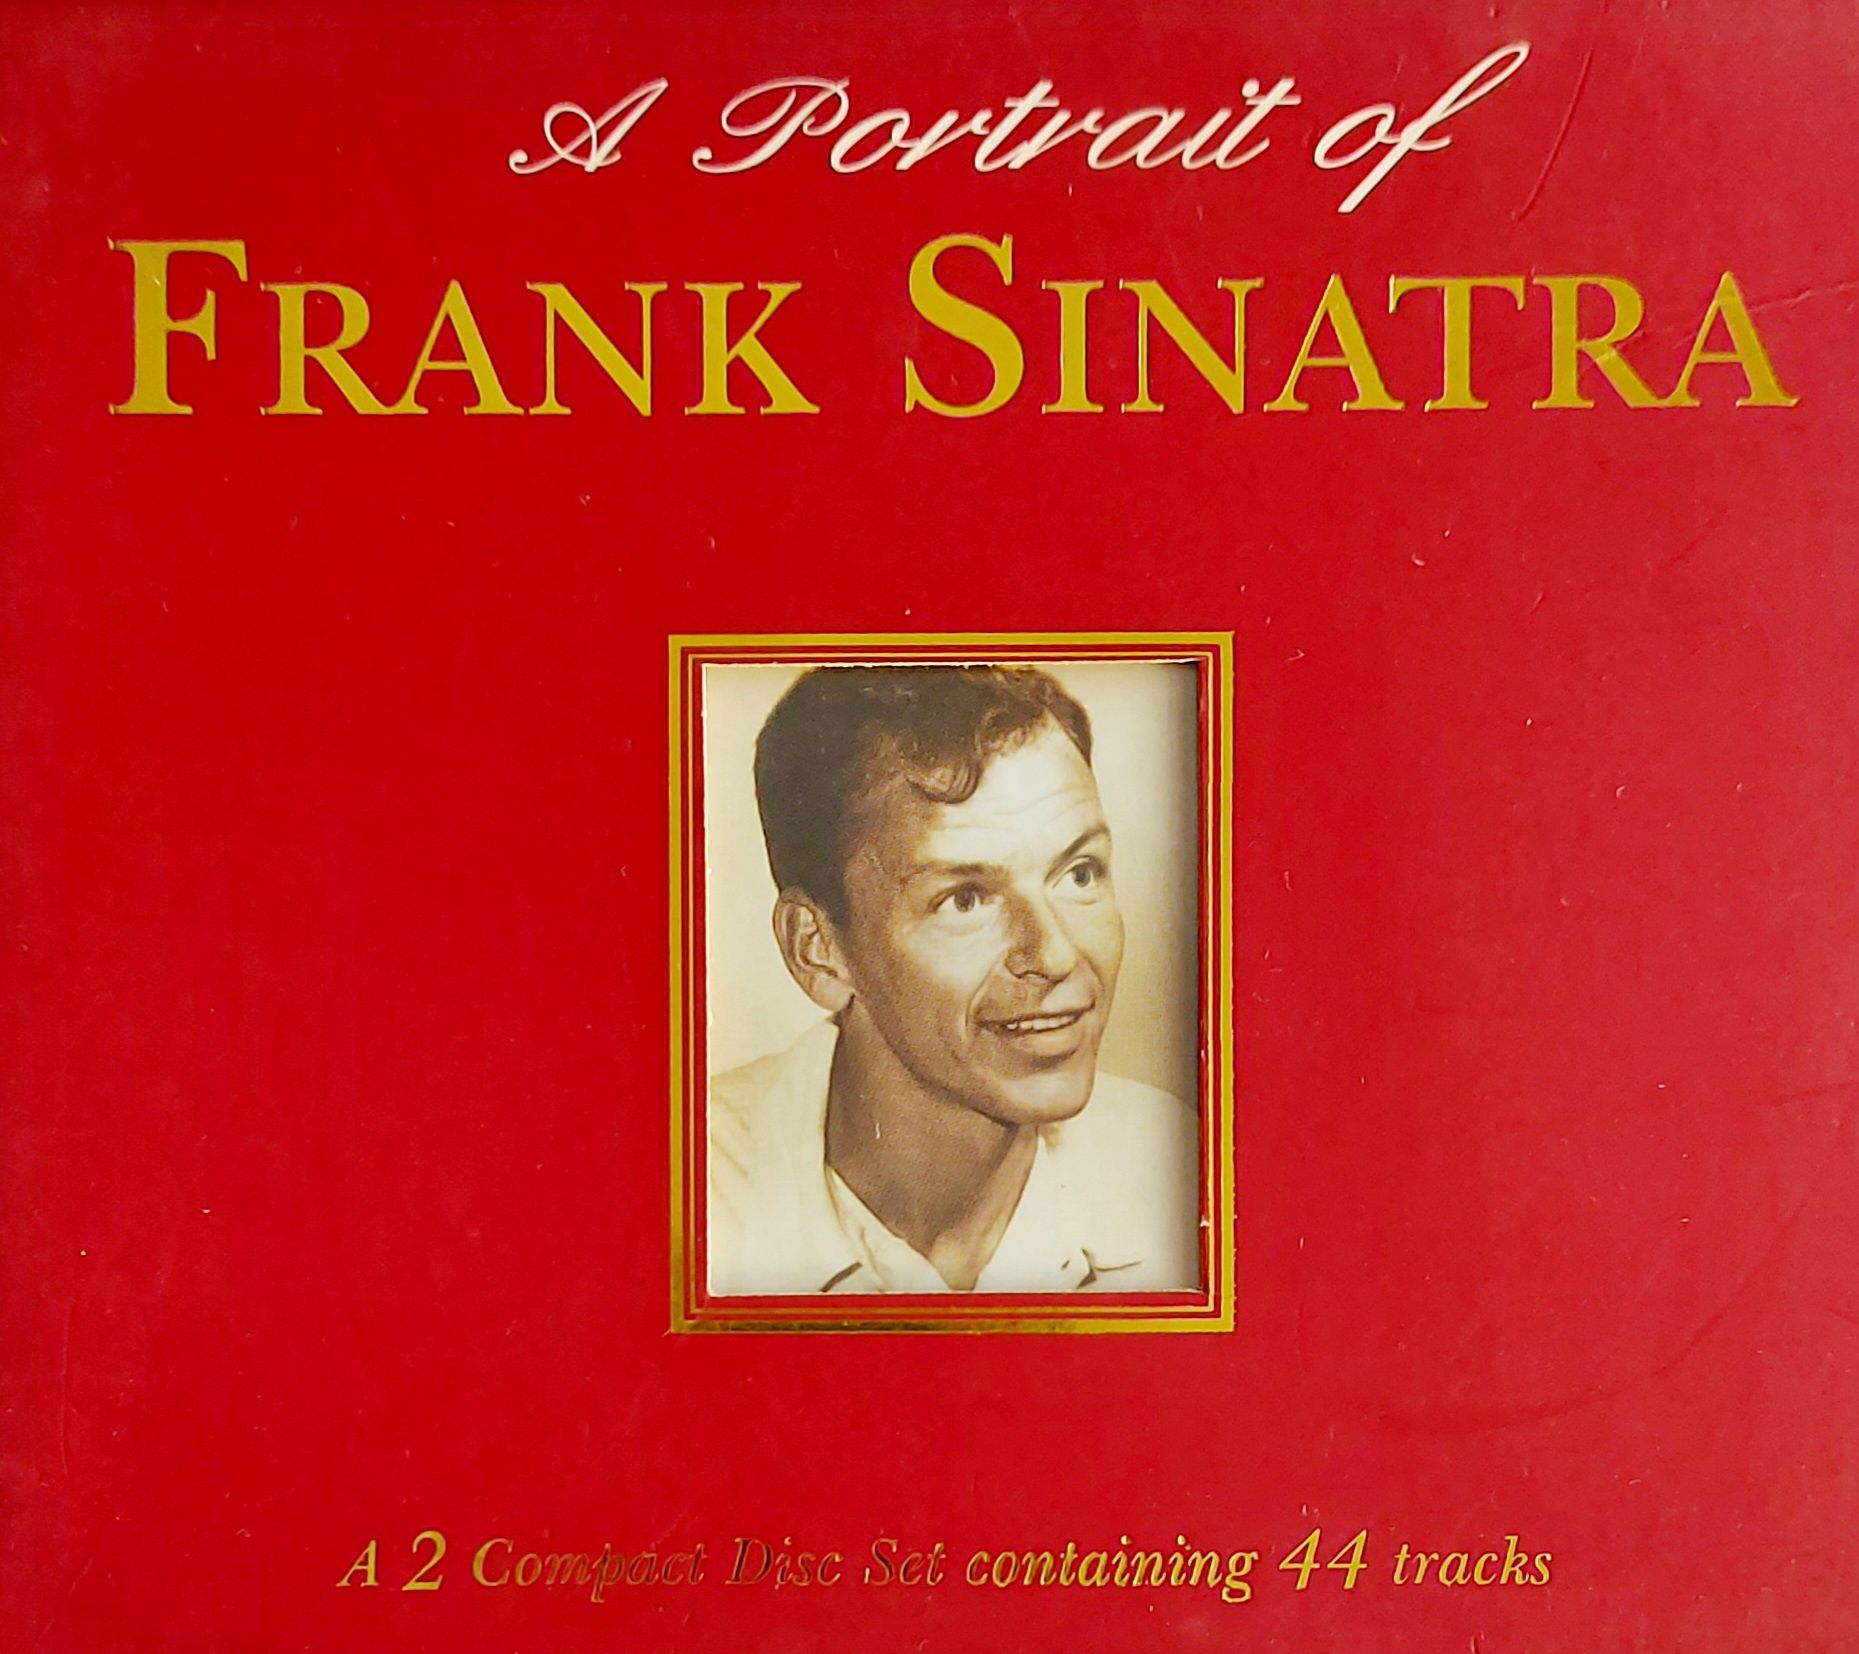 Frank Sinatra A Portrait Of Frank Sinatra 2CD Box 1997r